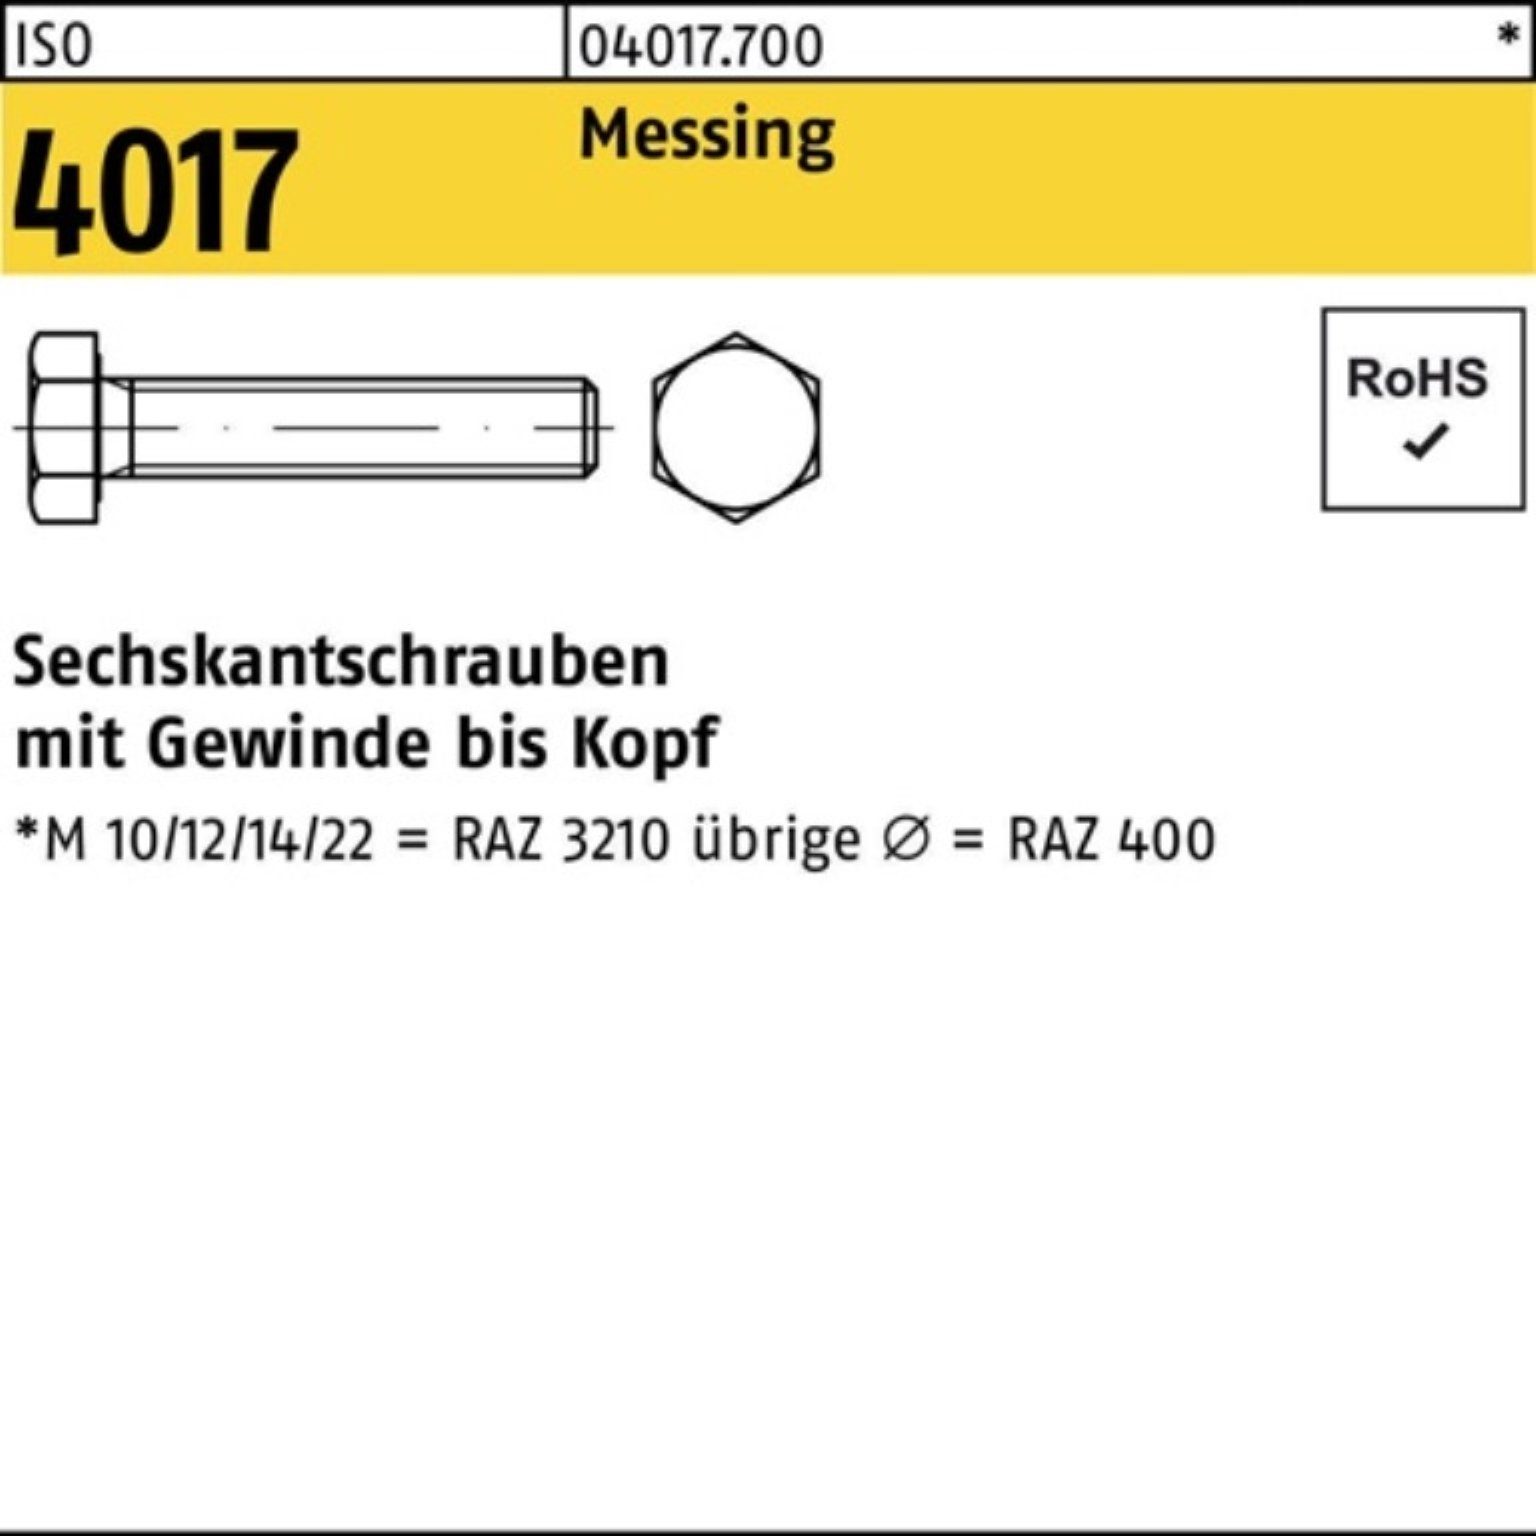 Bufab Sechskantschraube Pack Messing VG IS M10x Sechskantschraube 12 4017 ISO 100 100er Stück